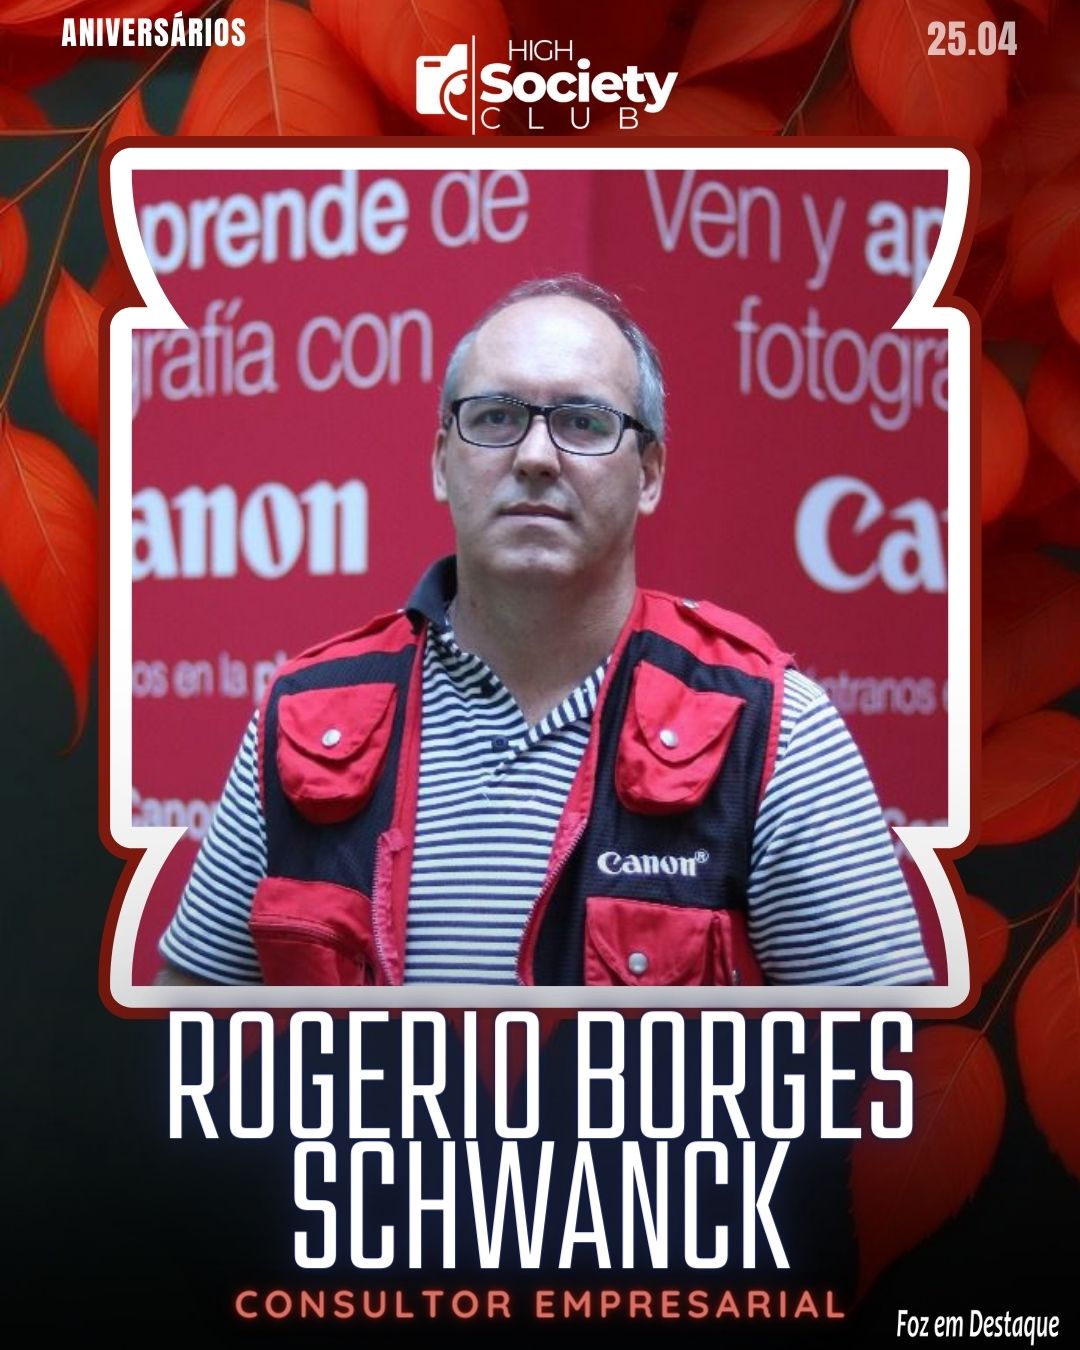 Rogerio Borges Schwanck - Consultor Empresarial, Turismo e Negócios Internacionais
Aniversários 25 de Abril 2024 High Sociedty Club Foz em Destaque